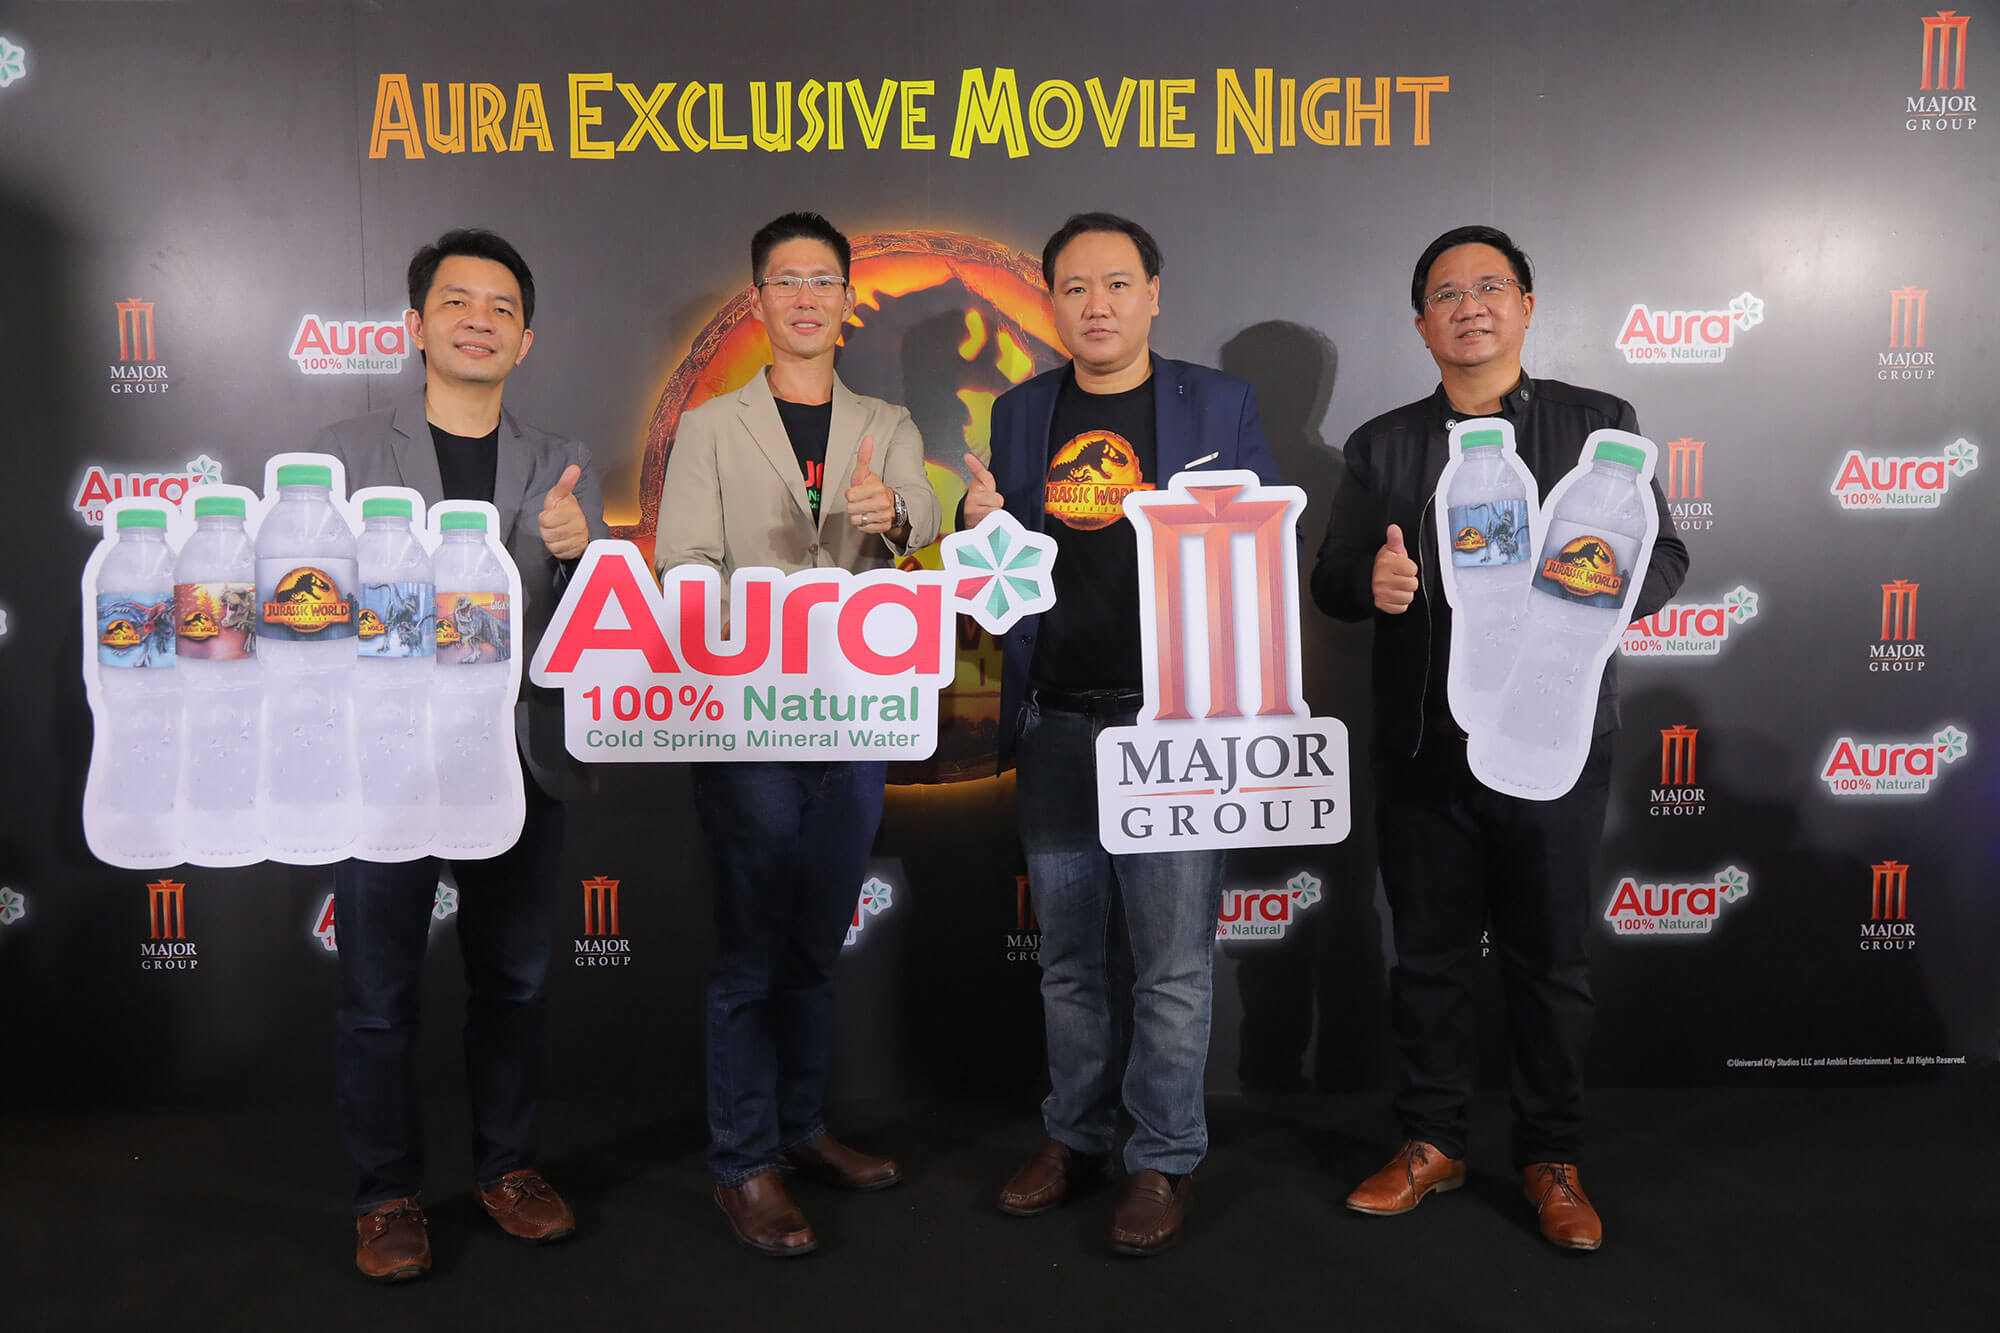 Aura Exclusive Movie Night ต้อนรับการกลับมาของมหากาพย์ภาพยนตร์ฟอร์มยักษ์ ส่งแคมเปญสุดพิเศษ ‘The Secret of Aura’